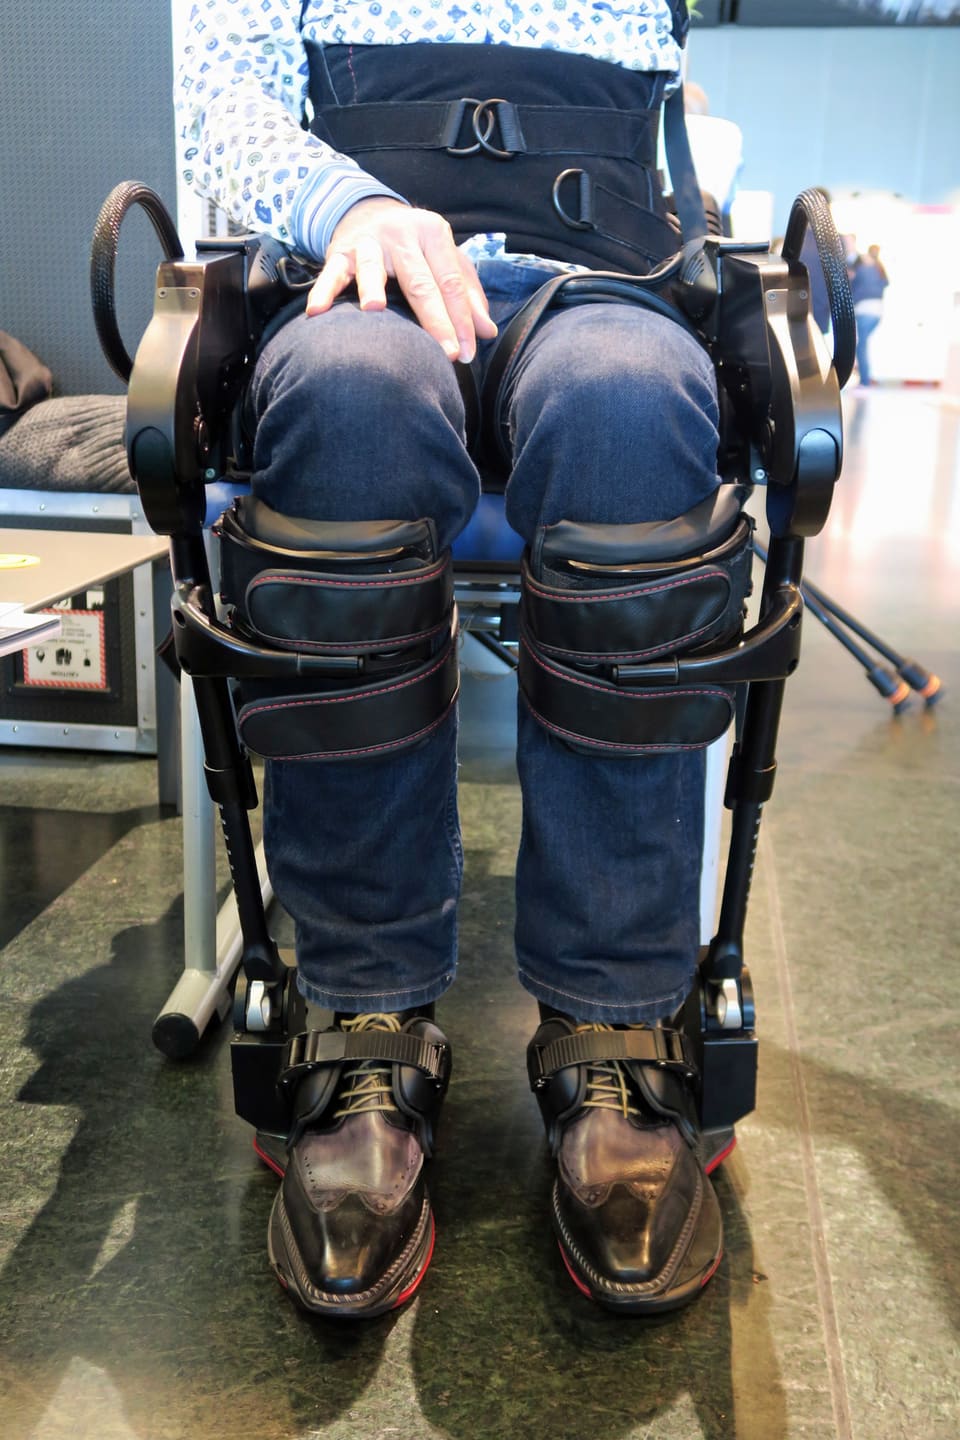 Die Beine eines Rollstuhlfahrers an einem Laufroboter.